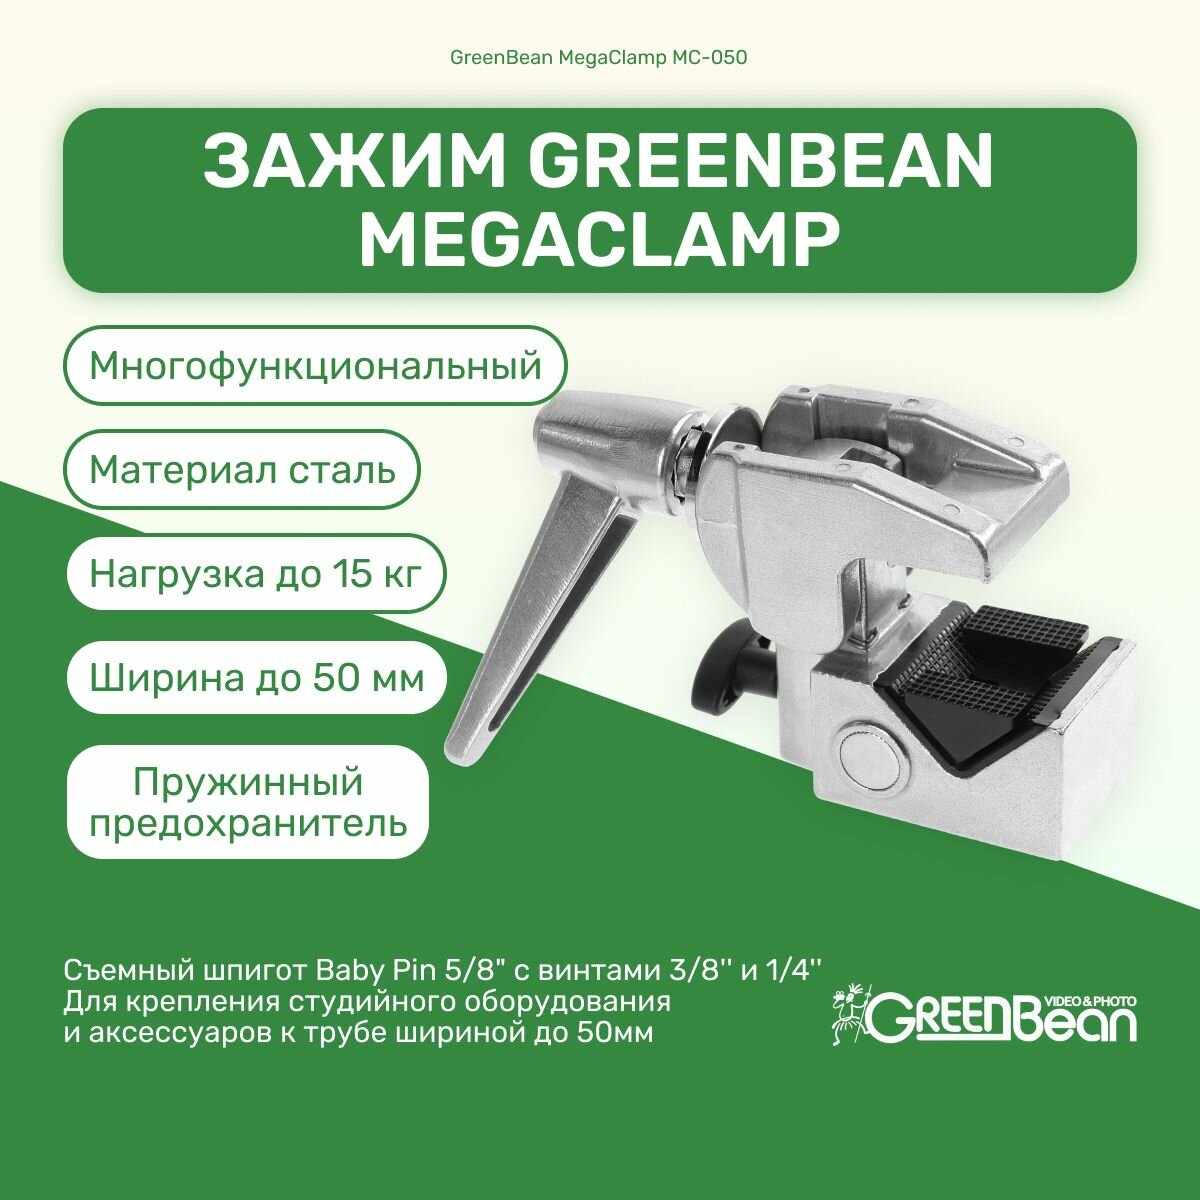 Зажим GreenBean MegaClamp MC-050 многофункциональный стальной для студийного оборудования для фото и видео съемок, прищепка, струбцина